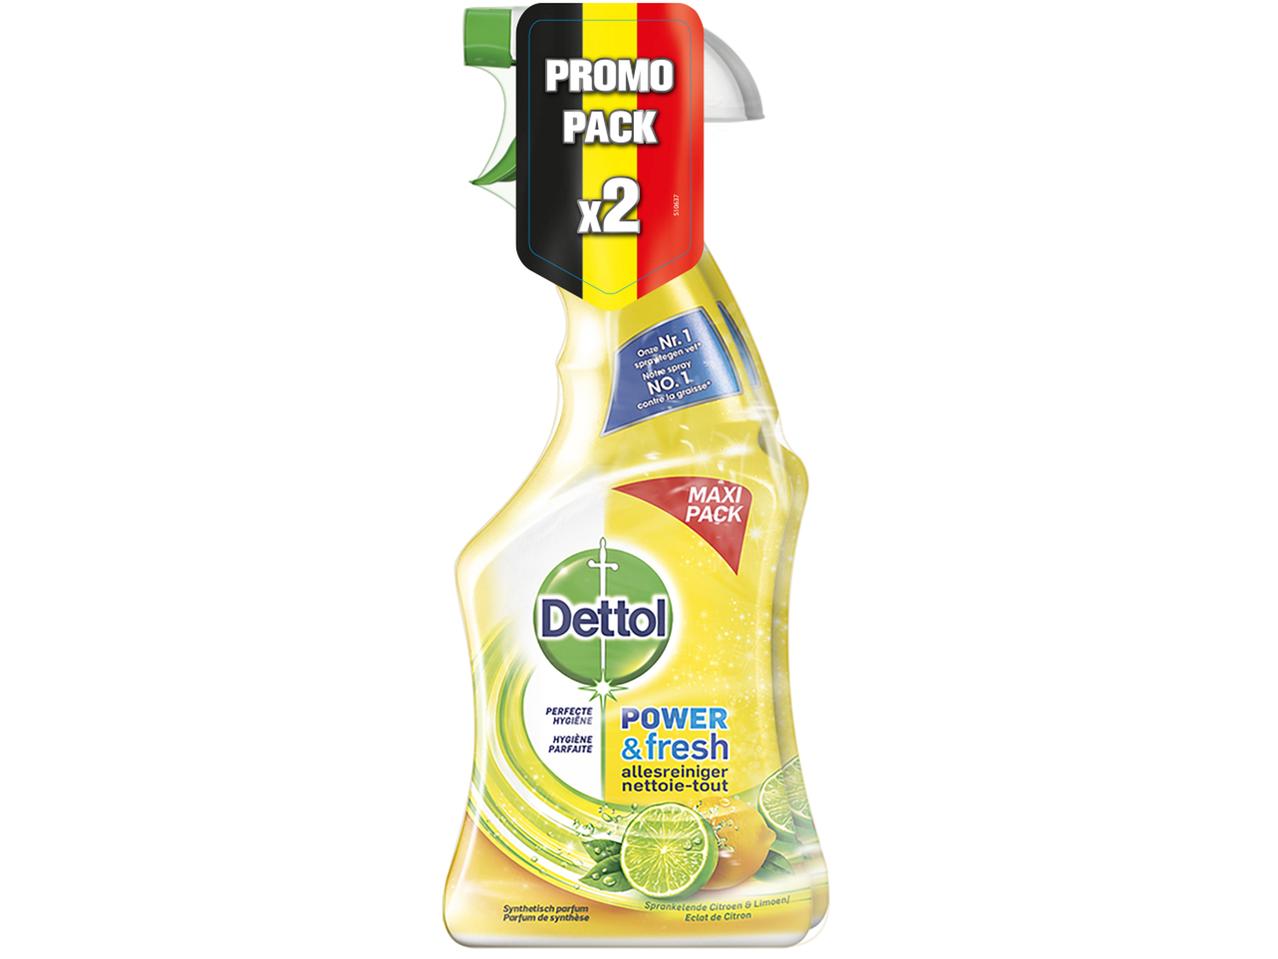 Nettoie-tout citron